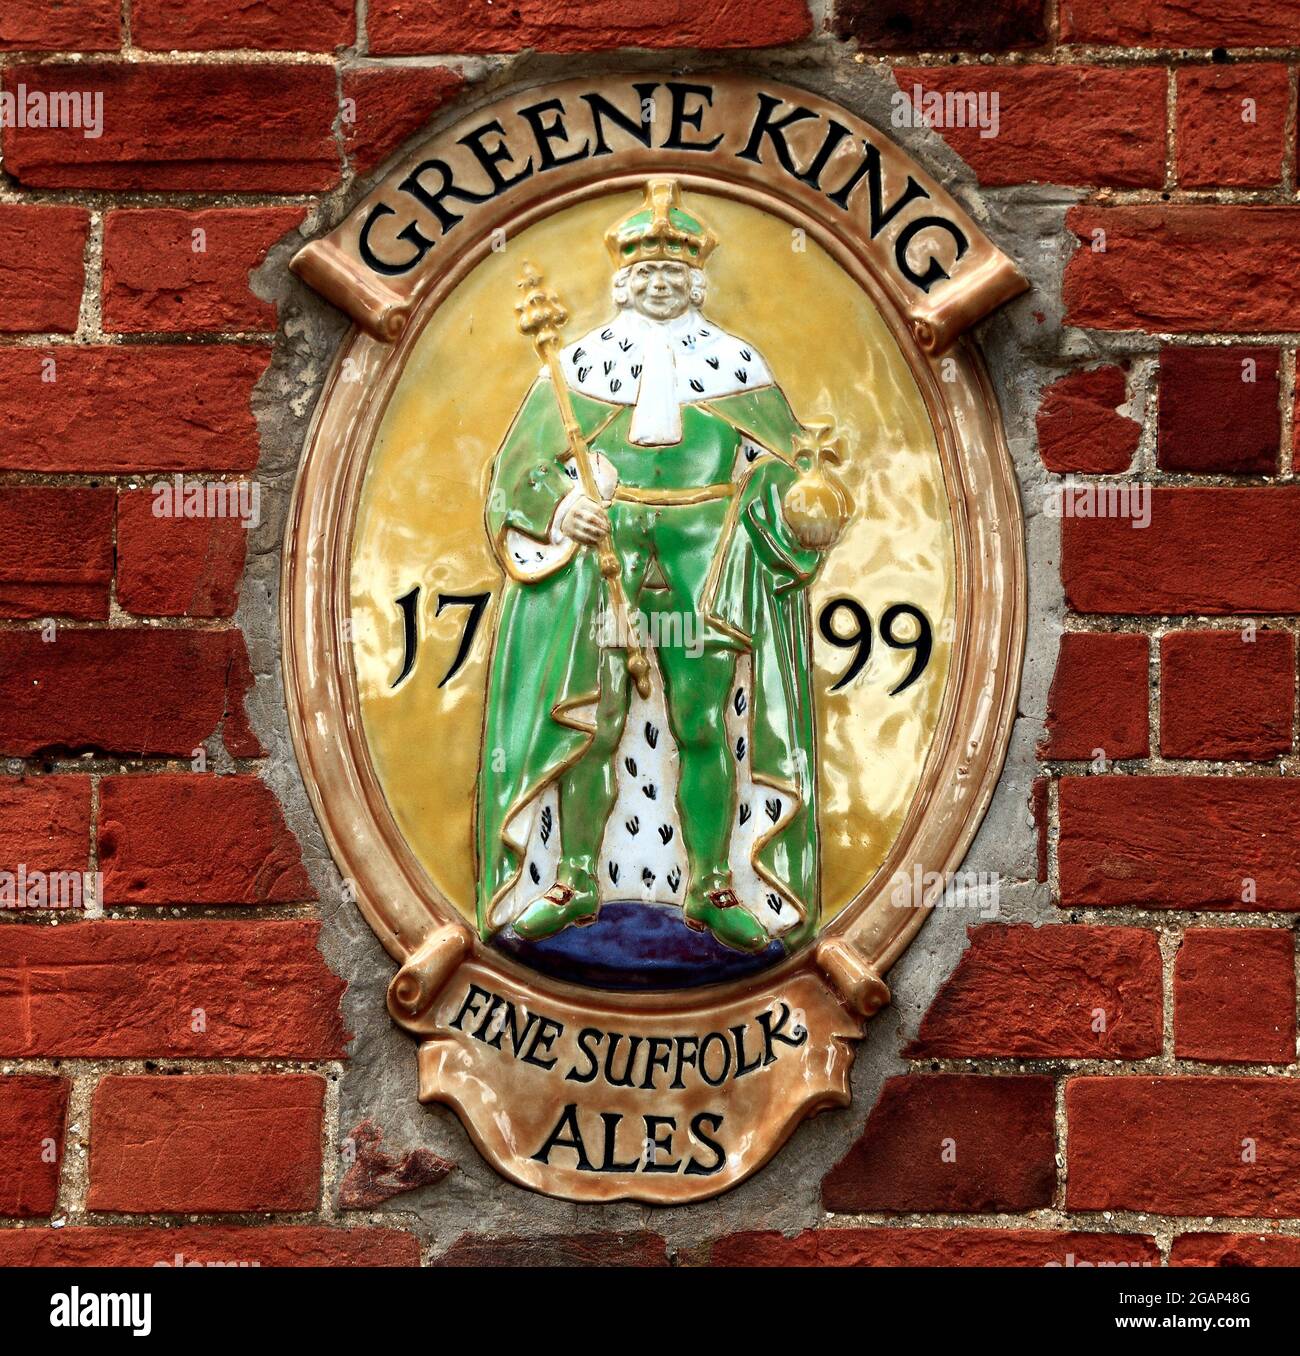 Plaque de la brasserie Greene King Banque D'Images